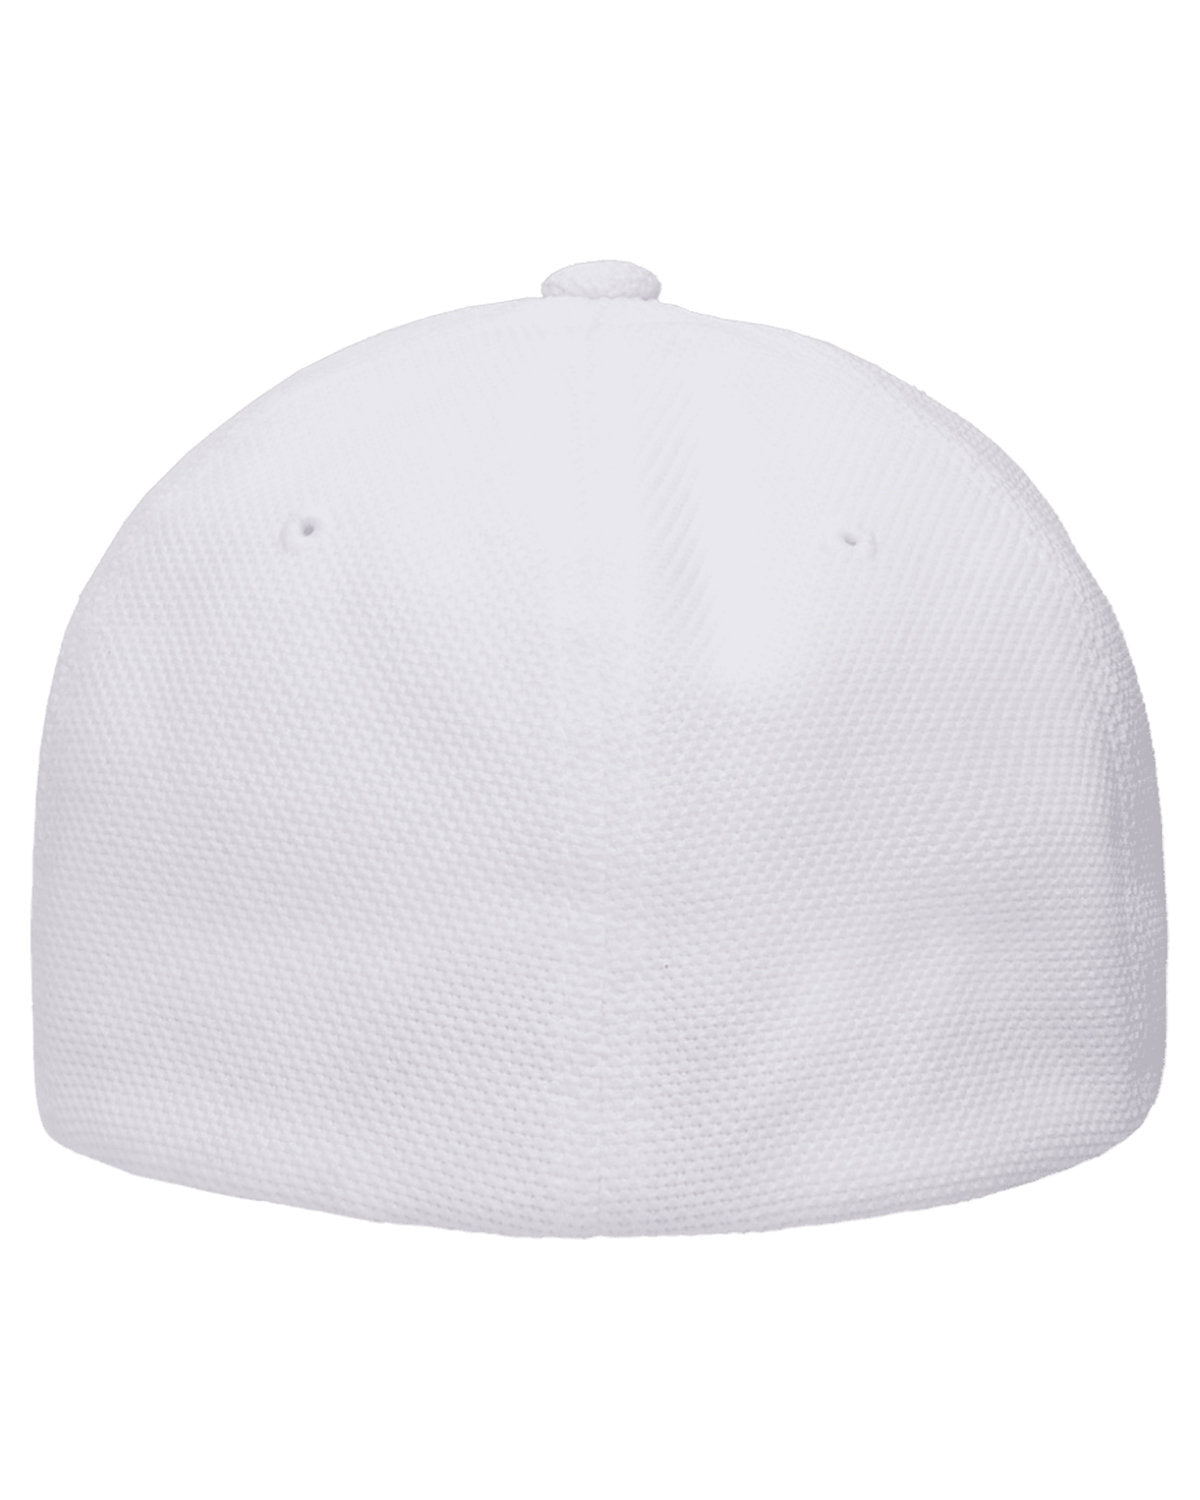 Flexfit Cool & Dry Pique Mesh Custom Caps, White